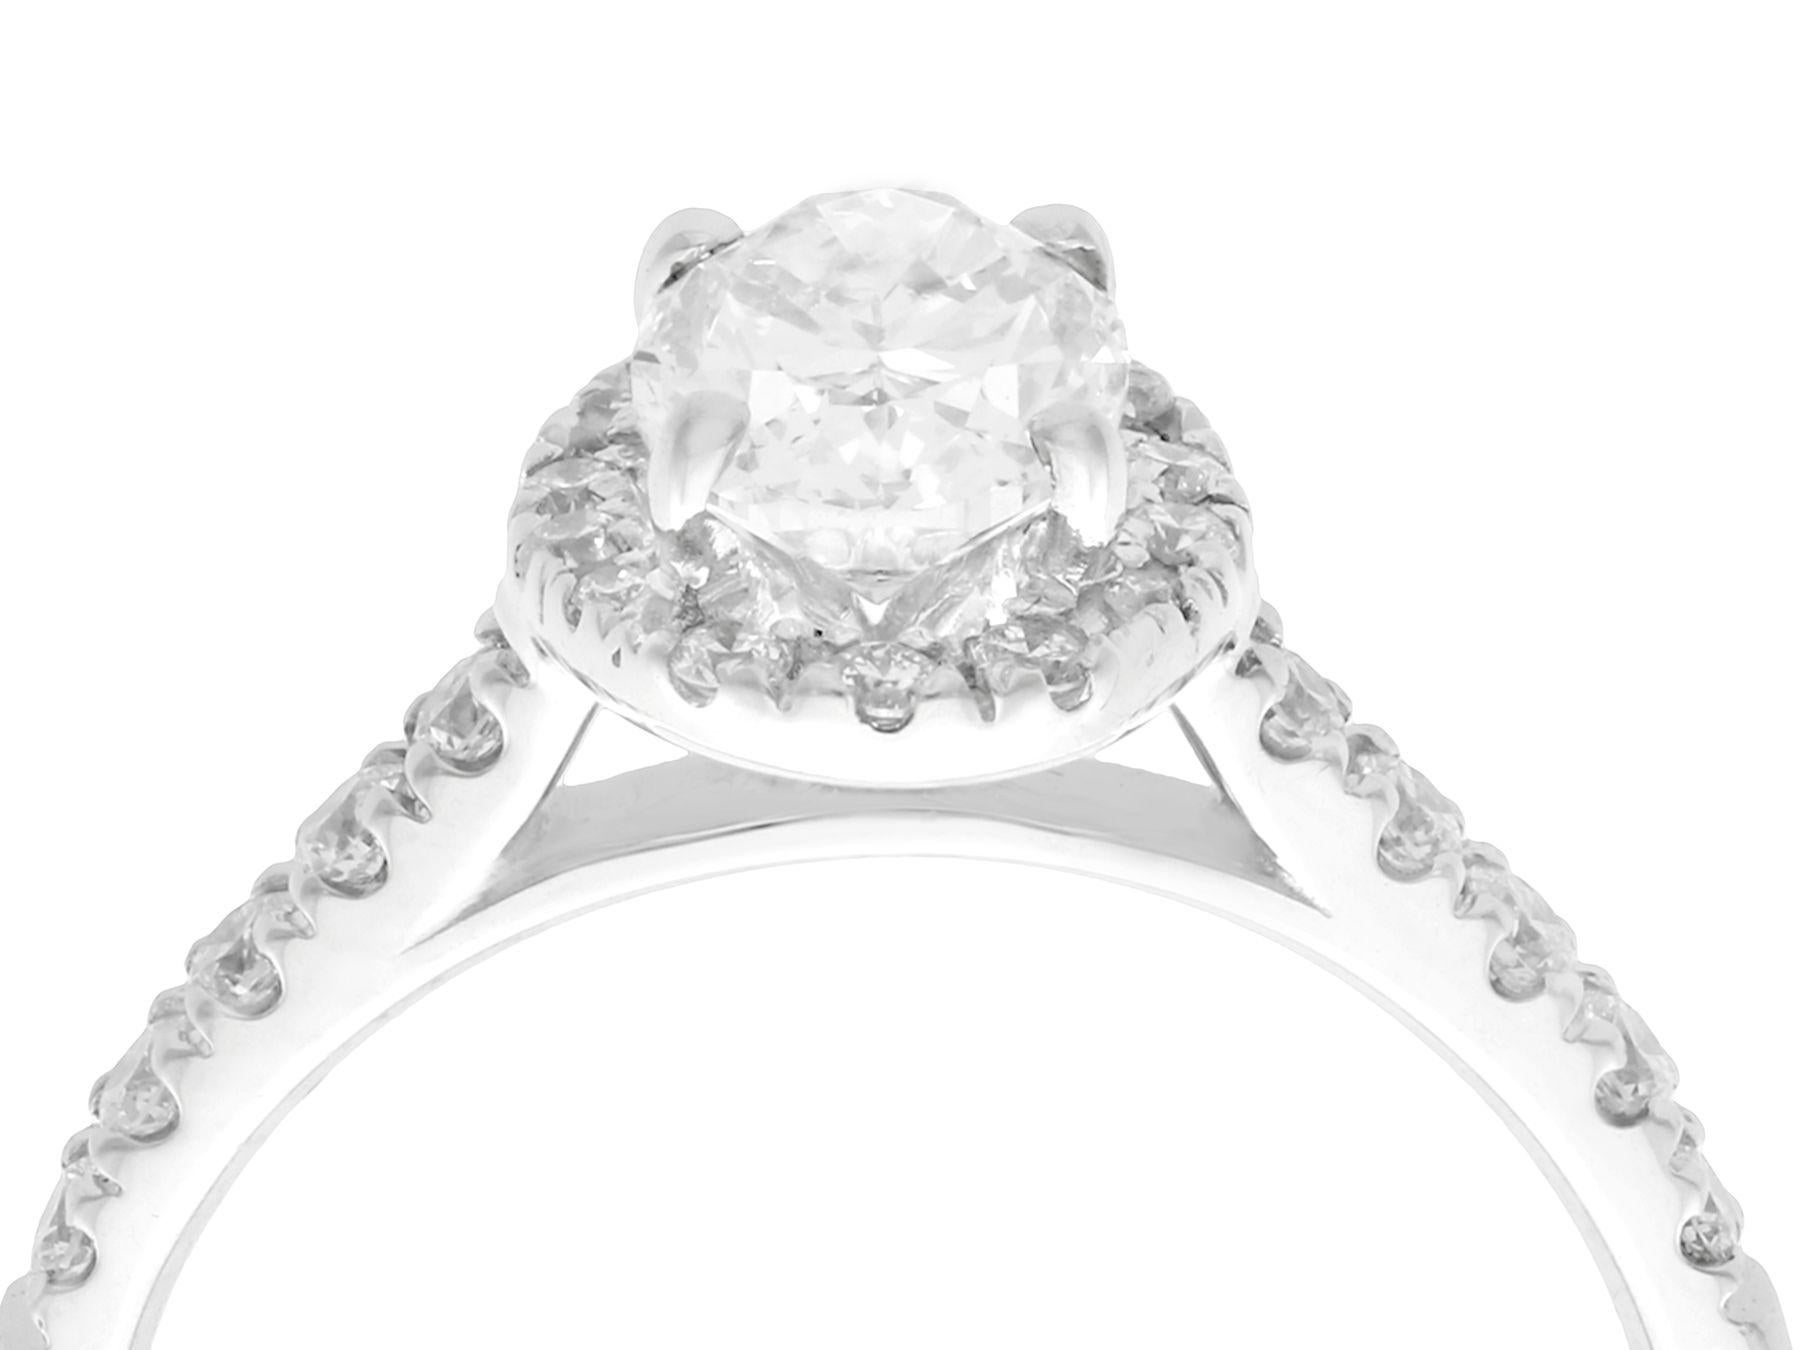 Ein atemberaubender, feiner und beeindruckender zeitgenössischer Halo-Ring aus 1,42 Karat Diamant und 18 Karat Weißgold; Teil unserer vielfältigen Diamantschmuck- und Nachlassschmuck-Kollektionen.

Dieser atemberaubende, feine und beeindruckende